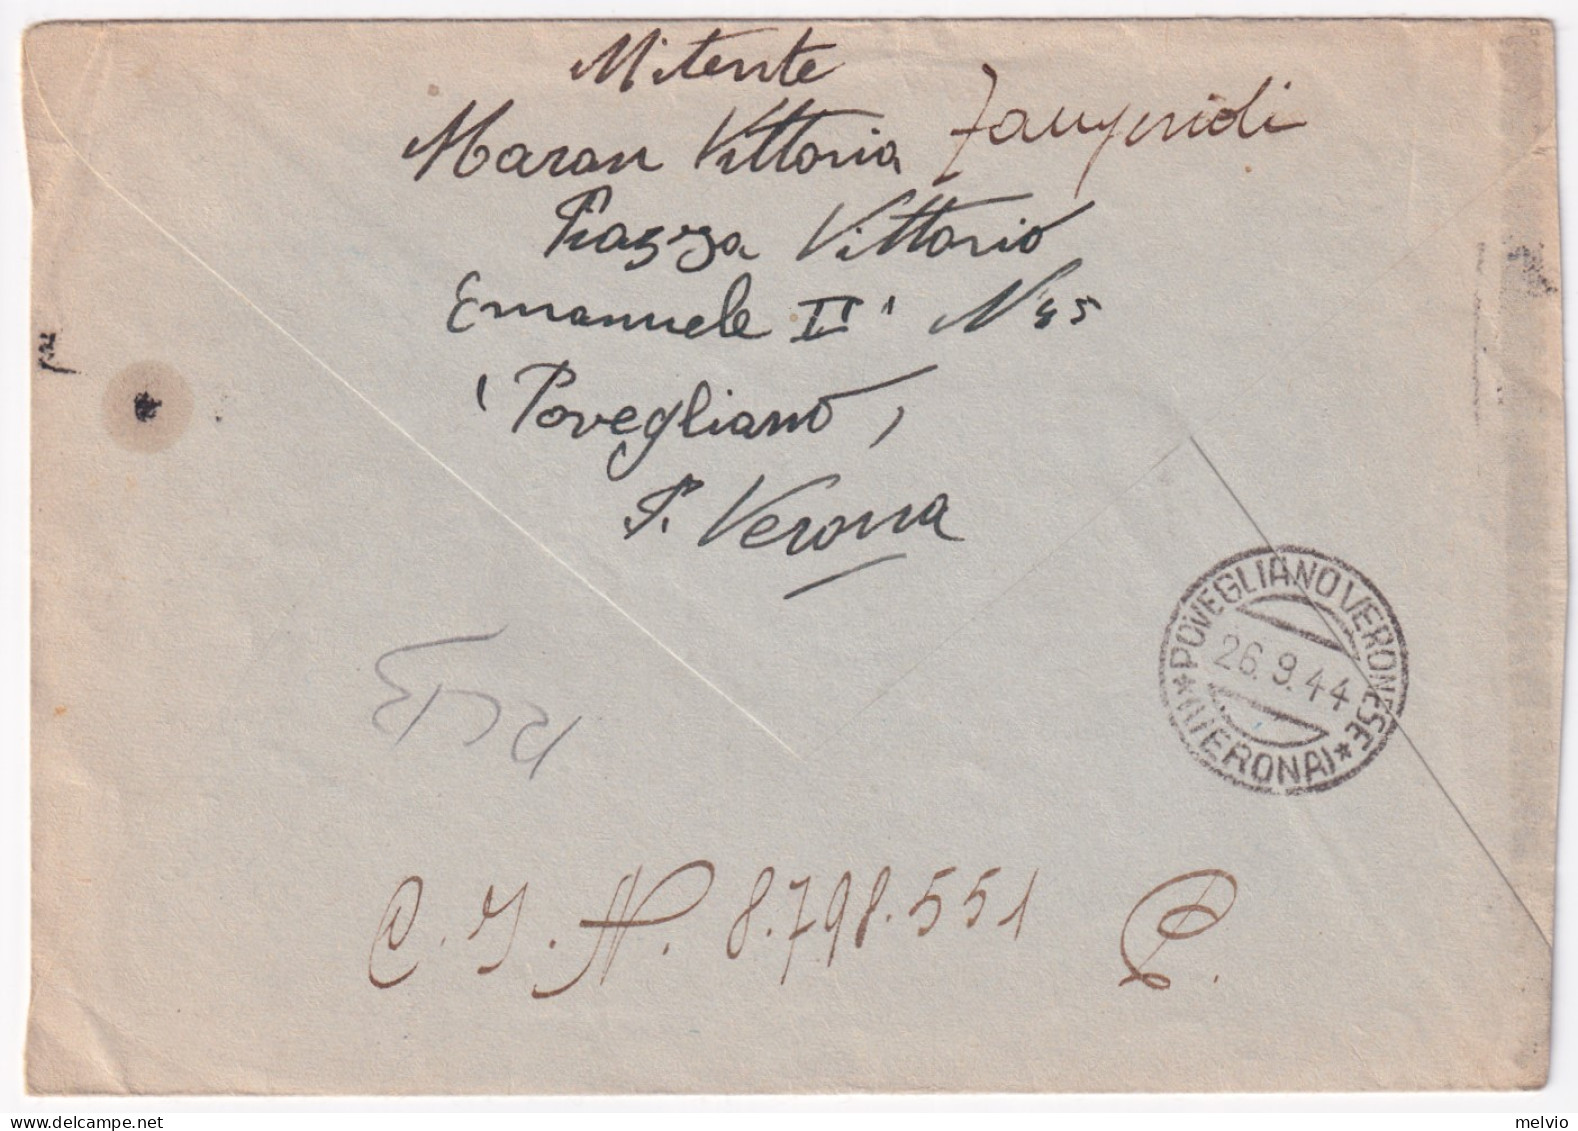 1944-Imperiale Sopr. RSI Lire 1,25 (495) Isolato Su Busta Povegliano (26.9) Per  - Marcofilie